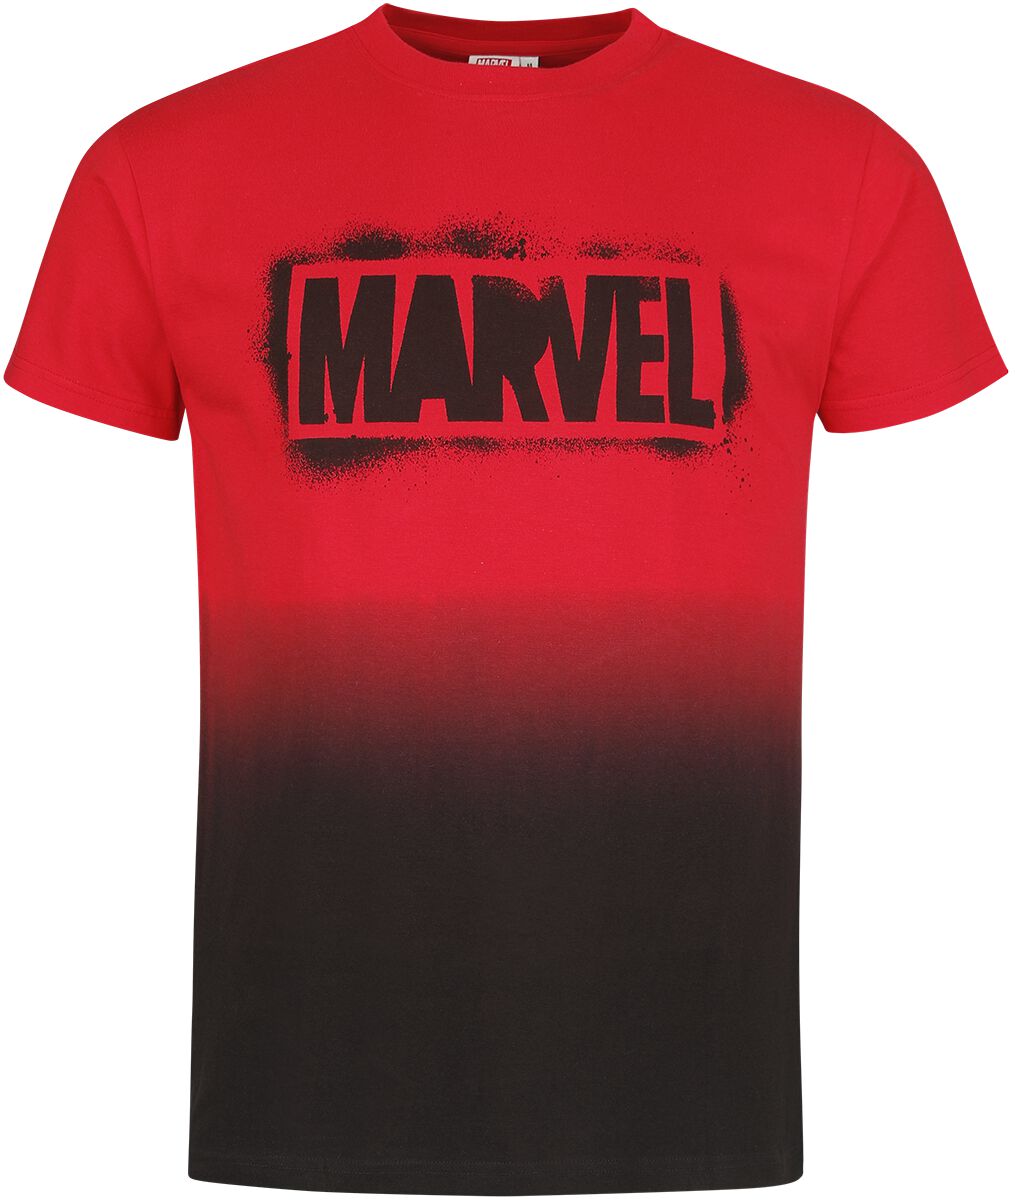 Marvel - Marvel T-Shirt - Logo - S bis XXL - für Männer - Größe M - multicolor  - EMP exklusives Merchandise!